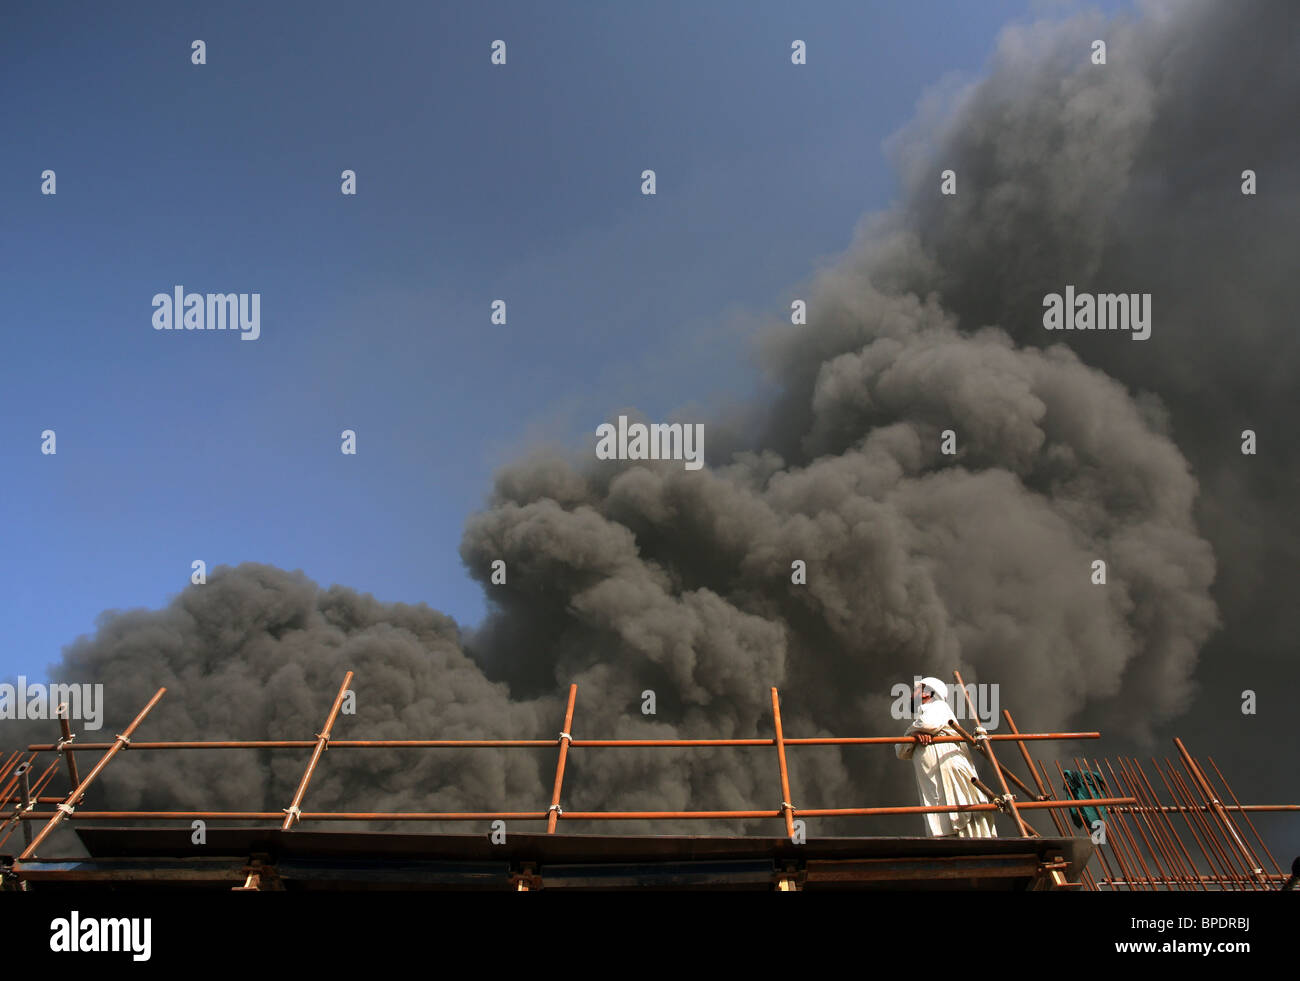 Un travailleur de la construction sur un échafaudage à à un sombre nuage de fumée, Dubai, Émirats Arabes Unis Banque D'Images